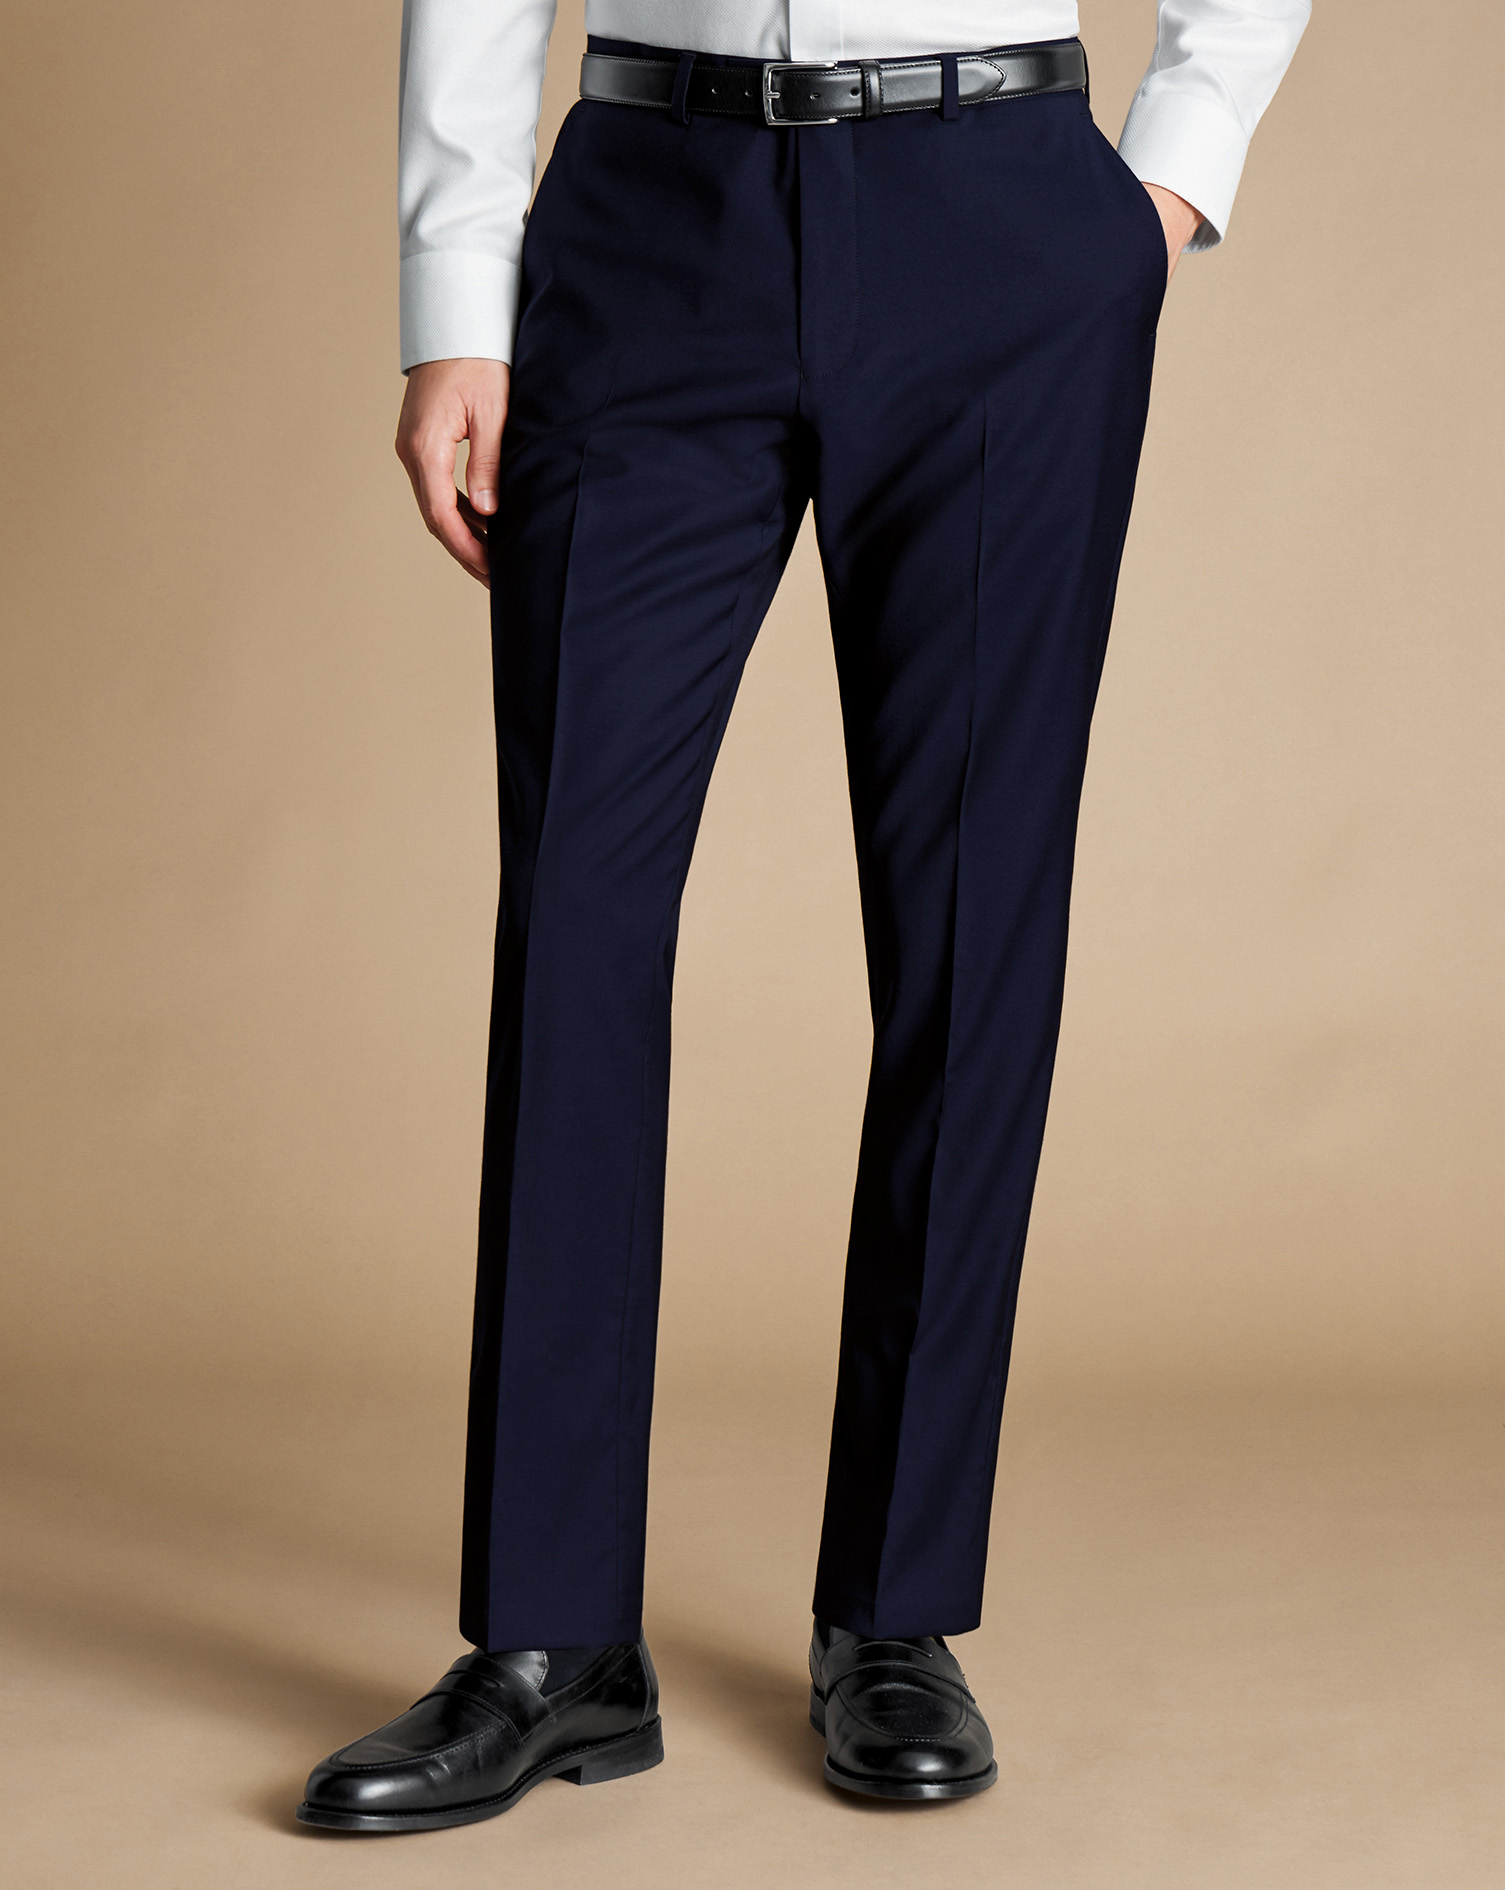 Men's Charles Tyrwhitt Italian Suit Trousers - Dark Navy Size 36/32
